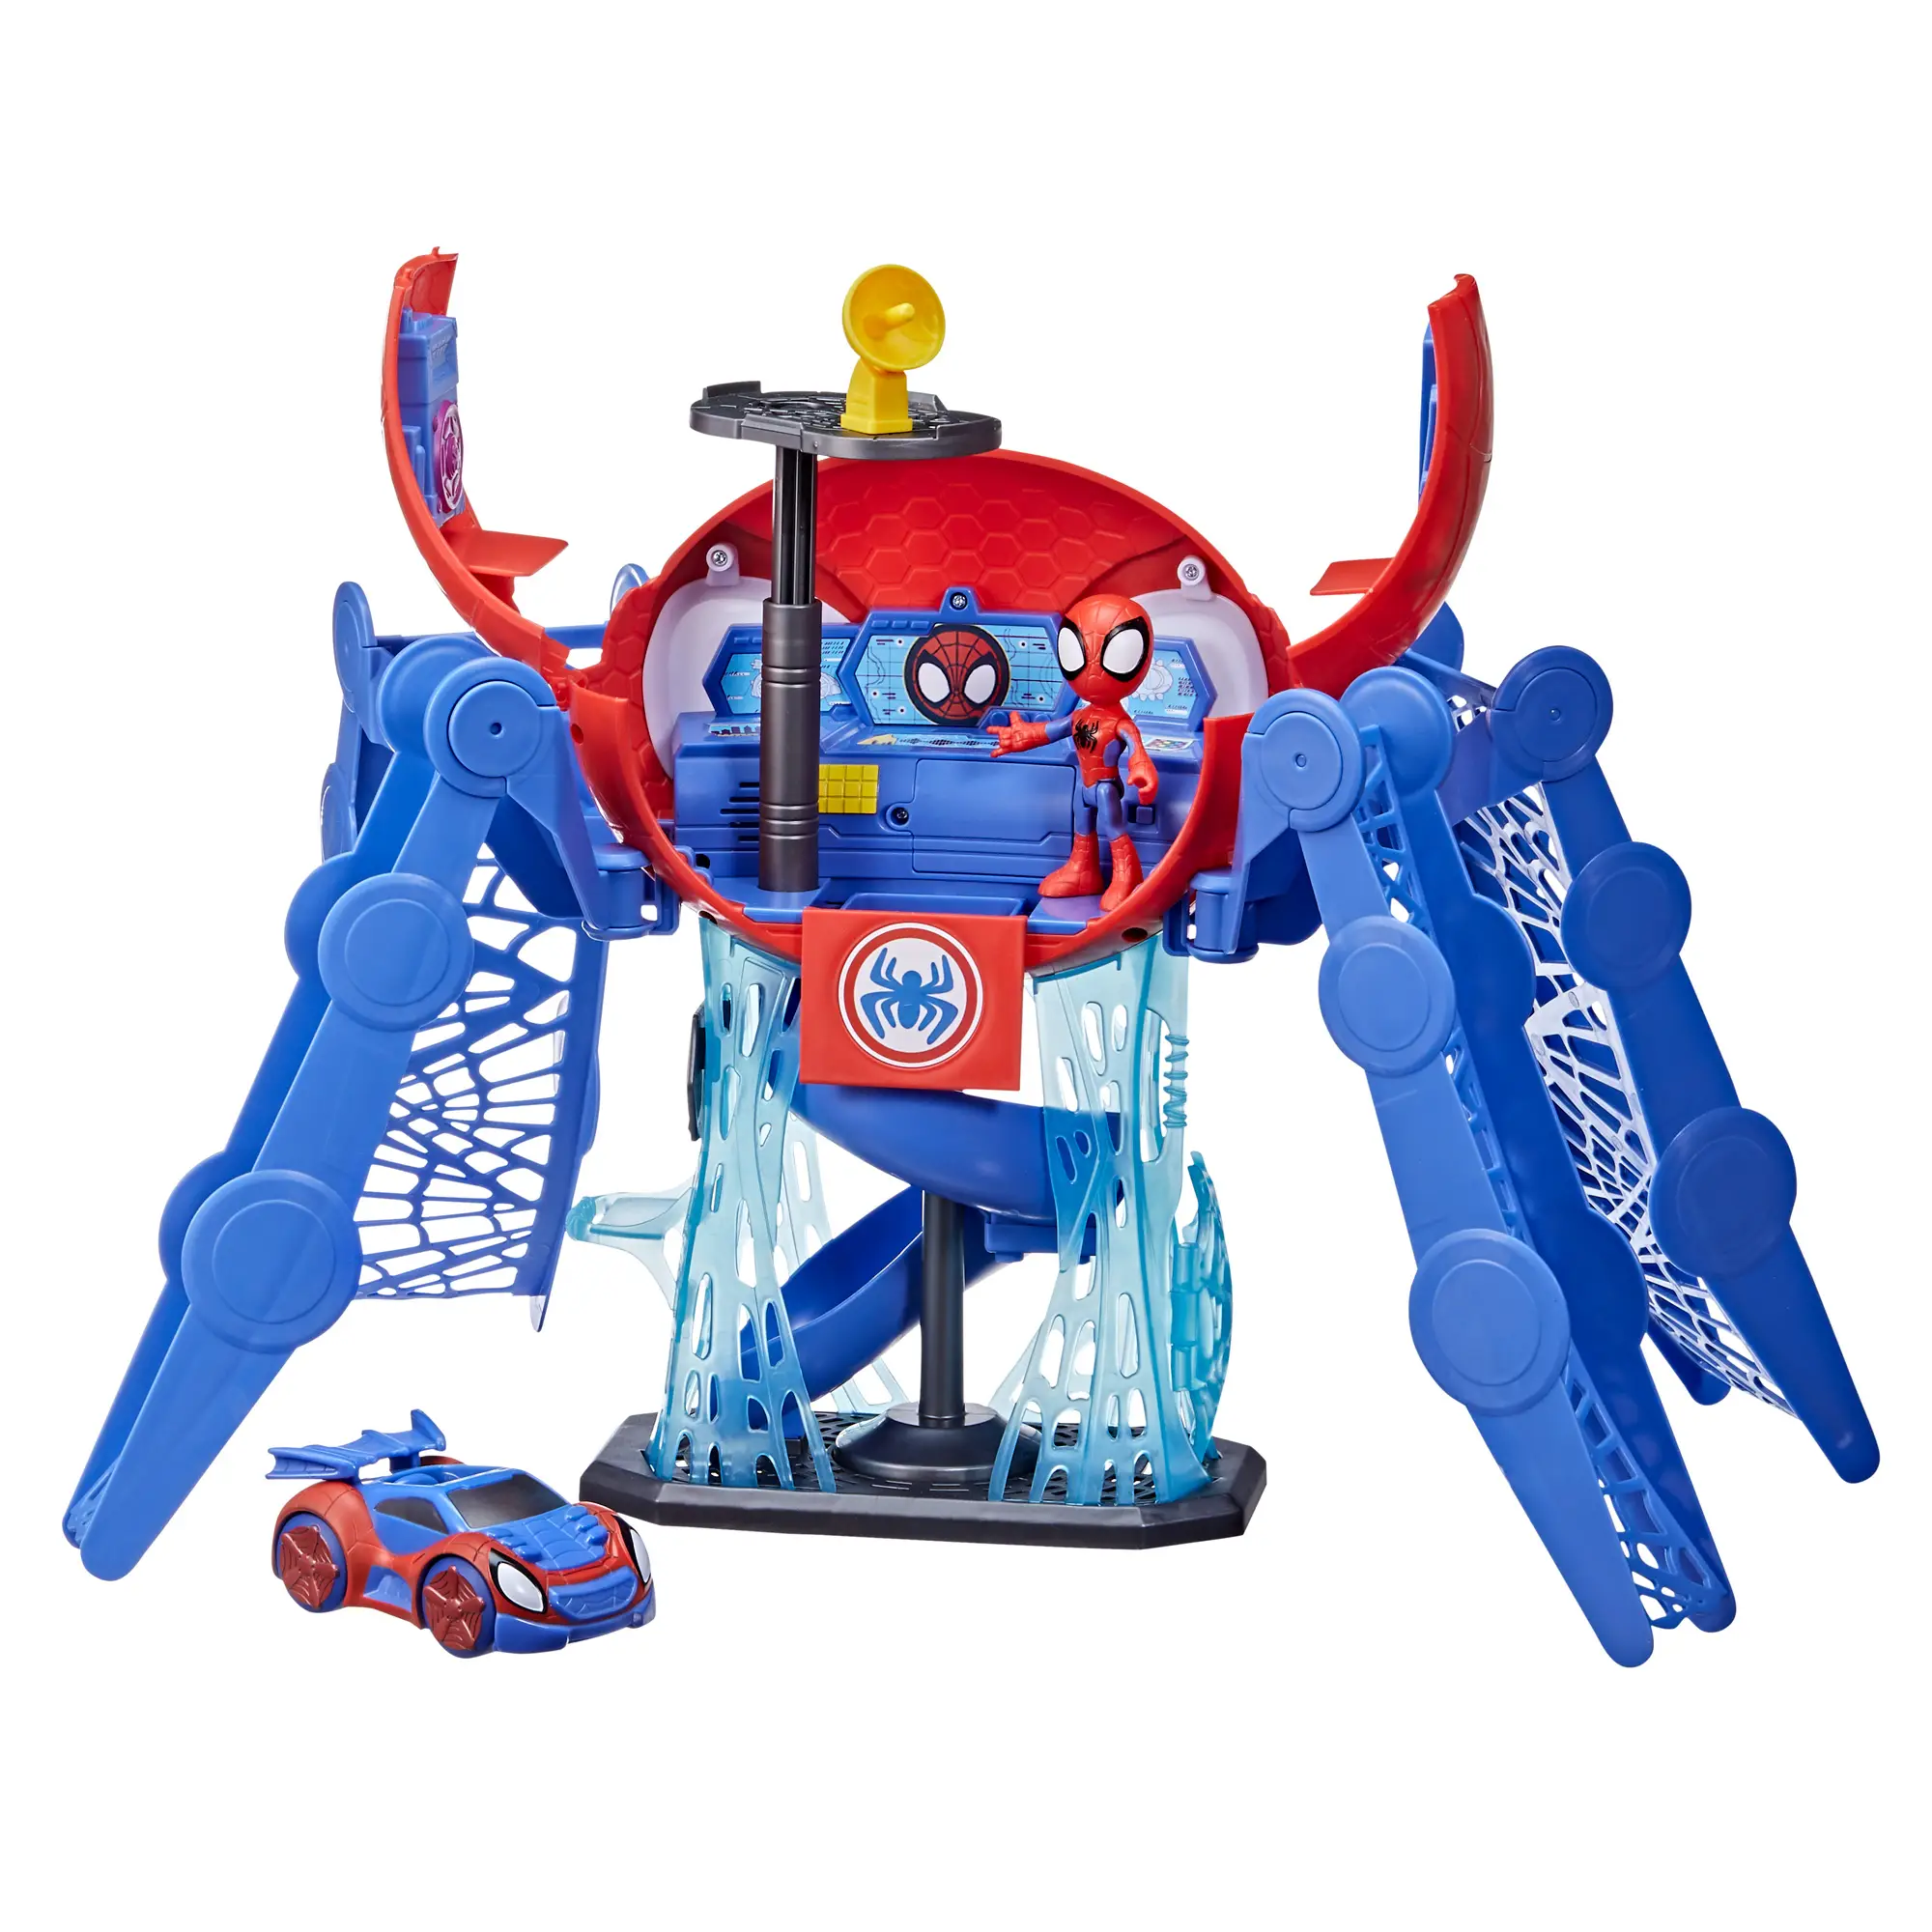 Hasbro - Spider-man - Vehículo aracnolanzador y figura de juguete Spider-Man  F78455L0, Spiderman